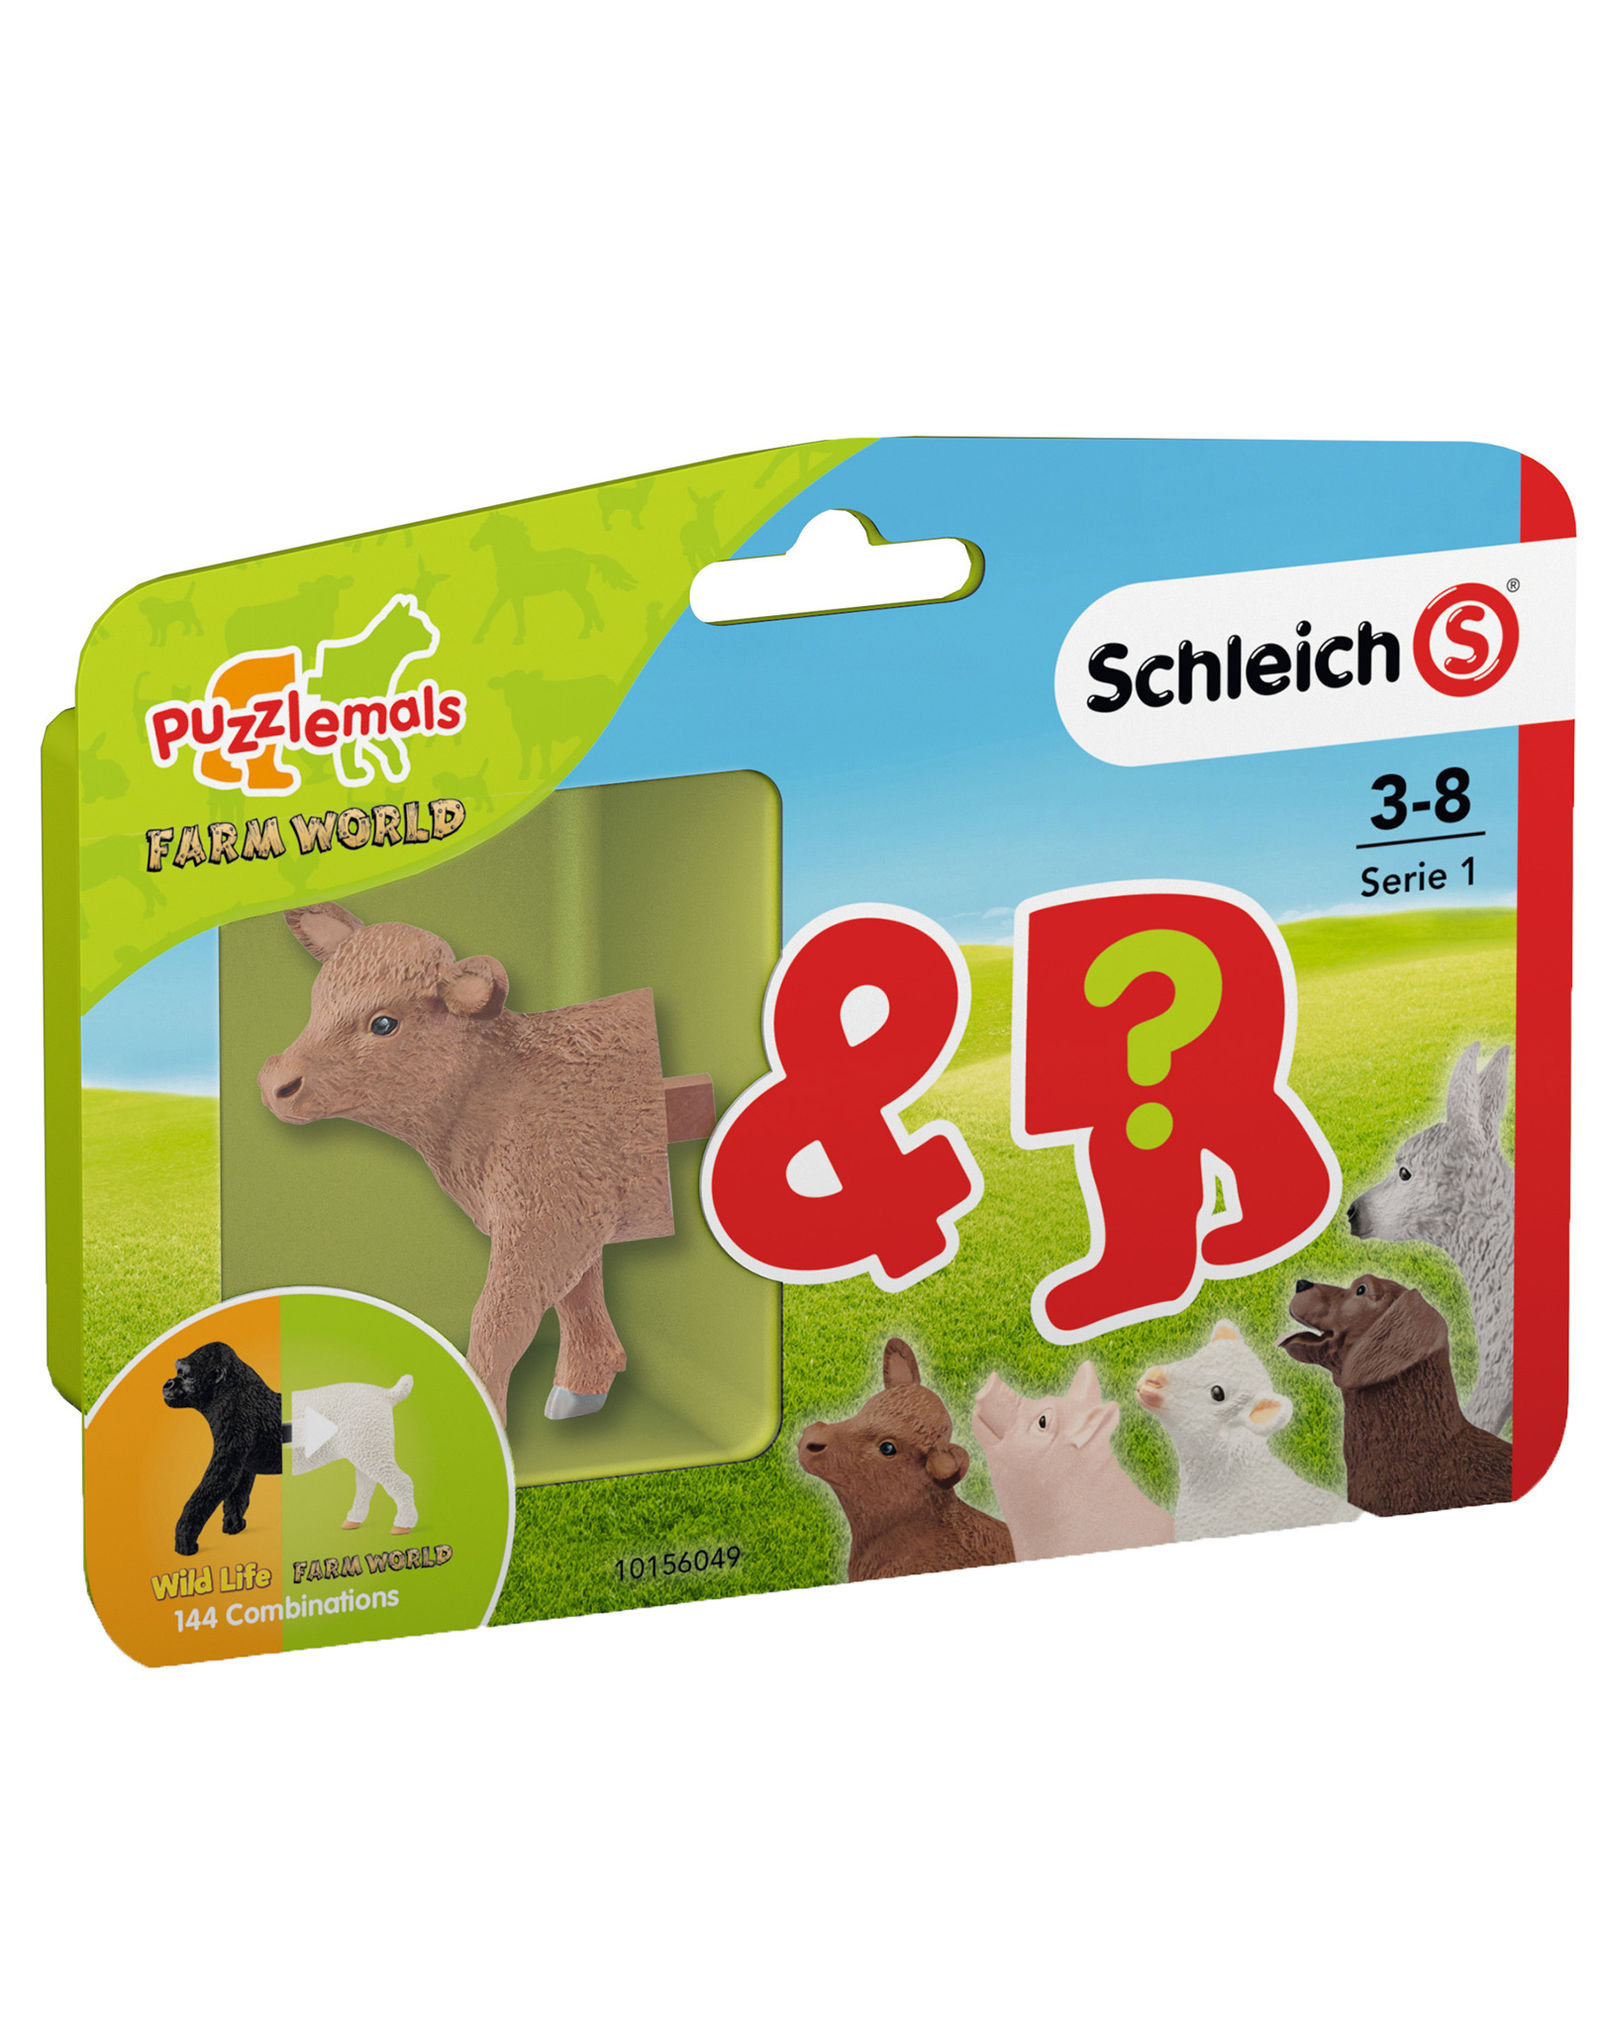 Schleich® 81042 Farm World - Puzzlemals Serie 1 | Weltbild.de